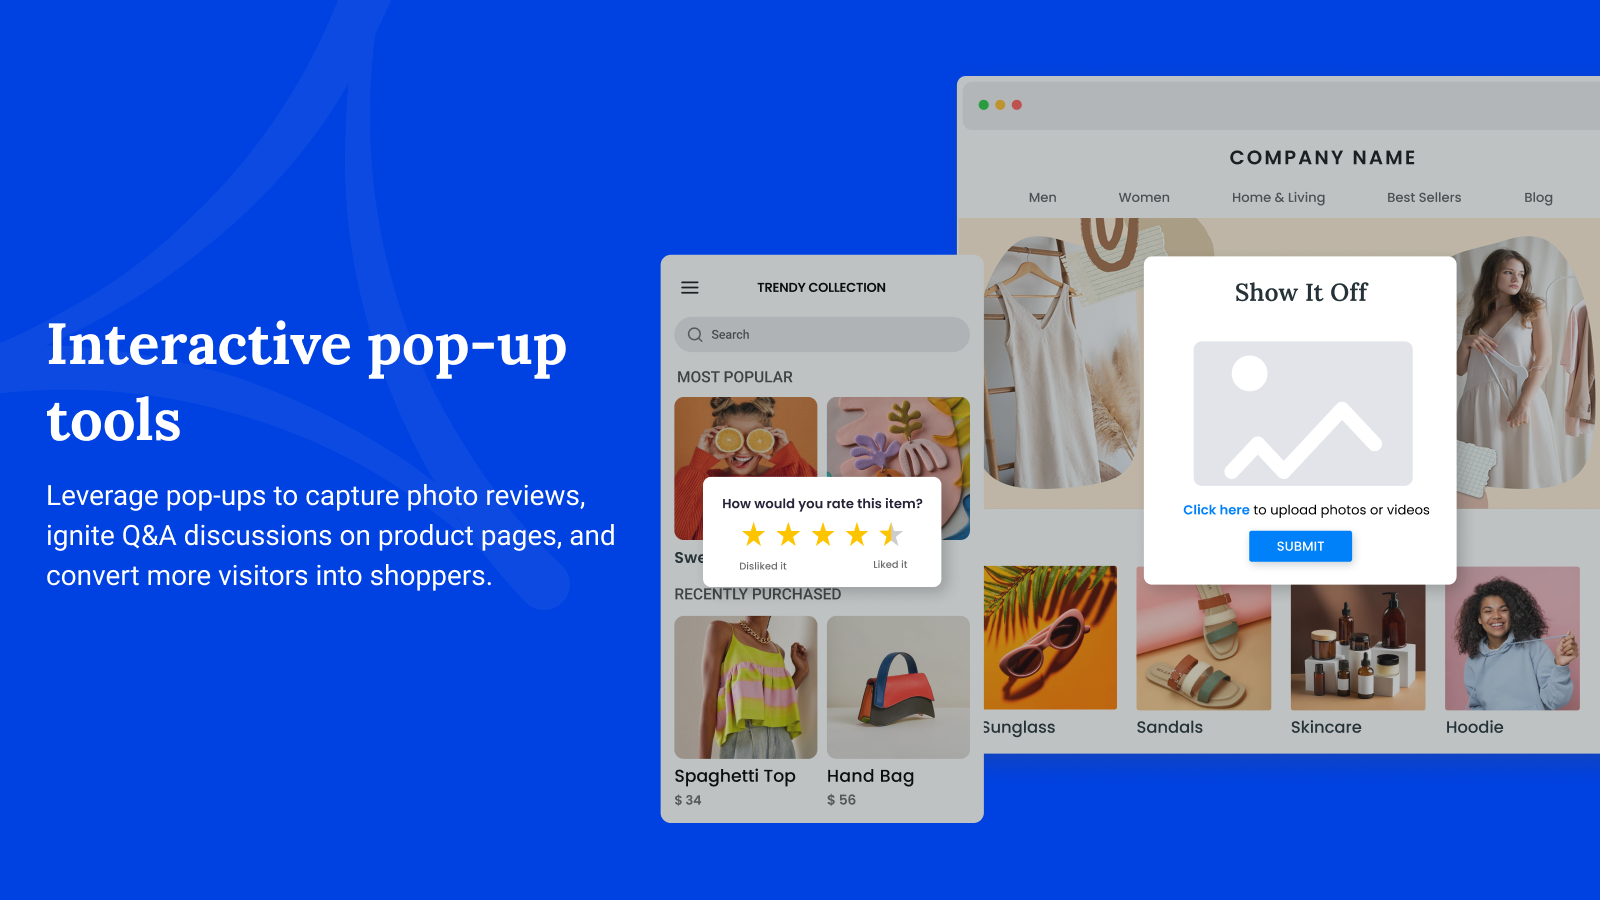 Aprovecha los pop-ups para capturar reseñas con fotos en las páginas de productos